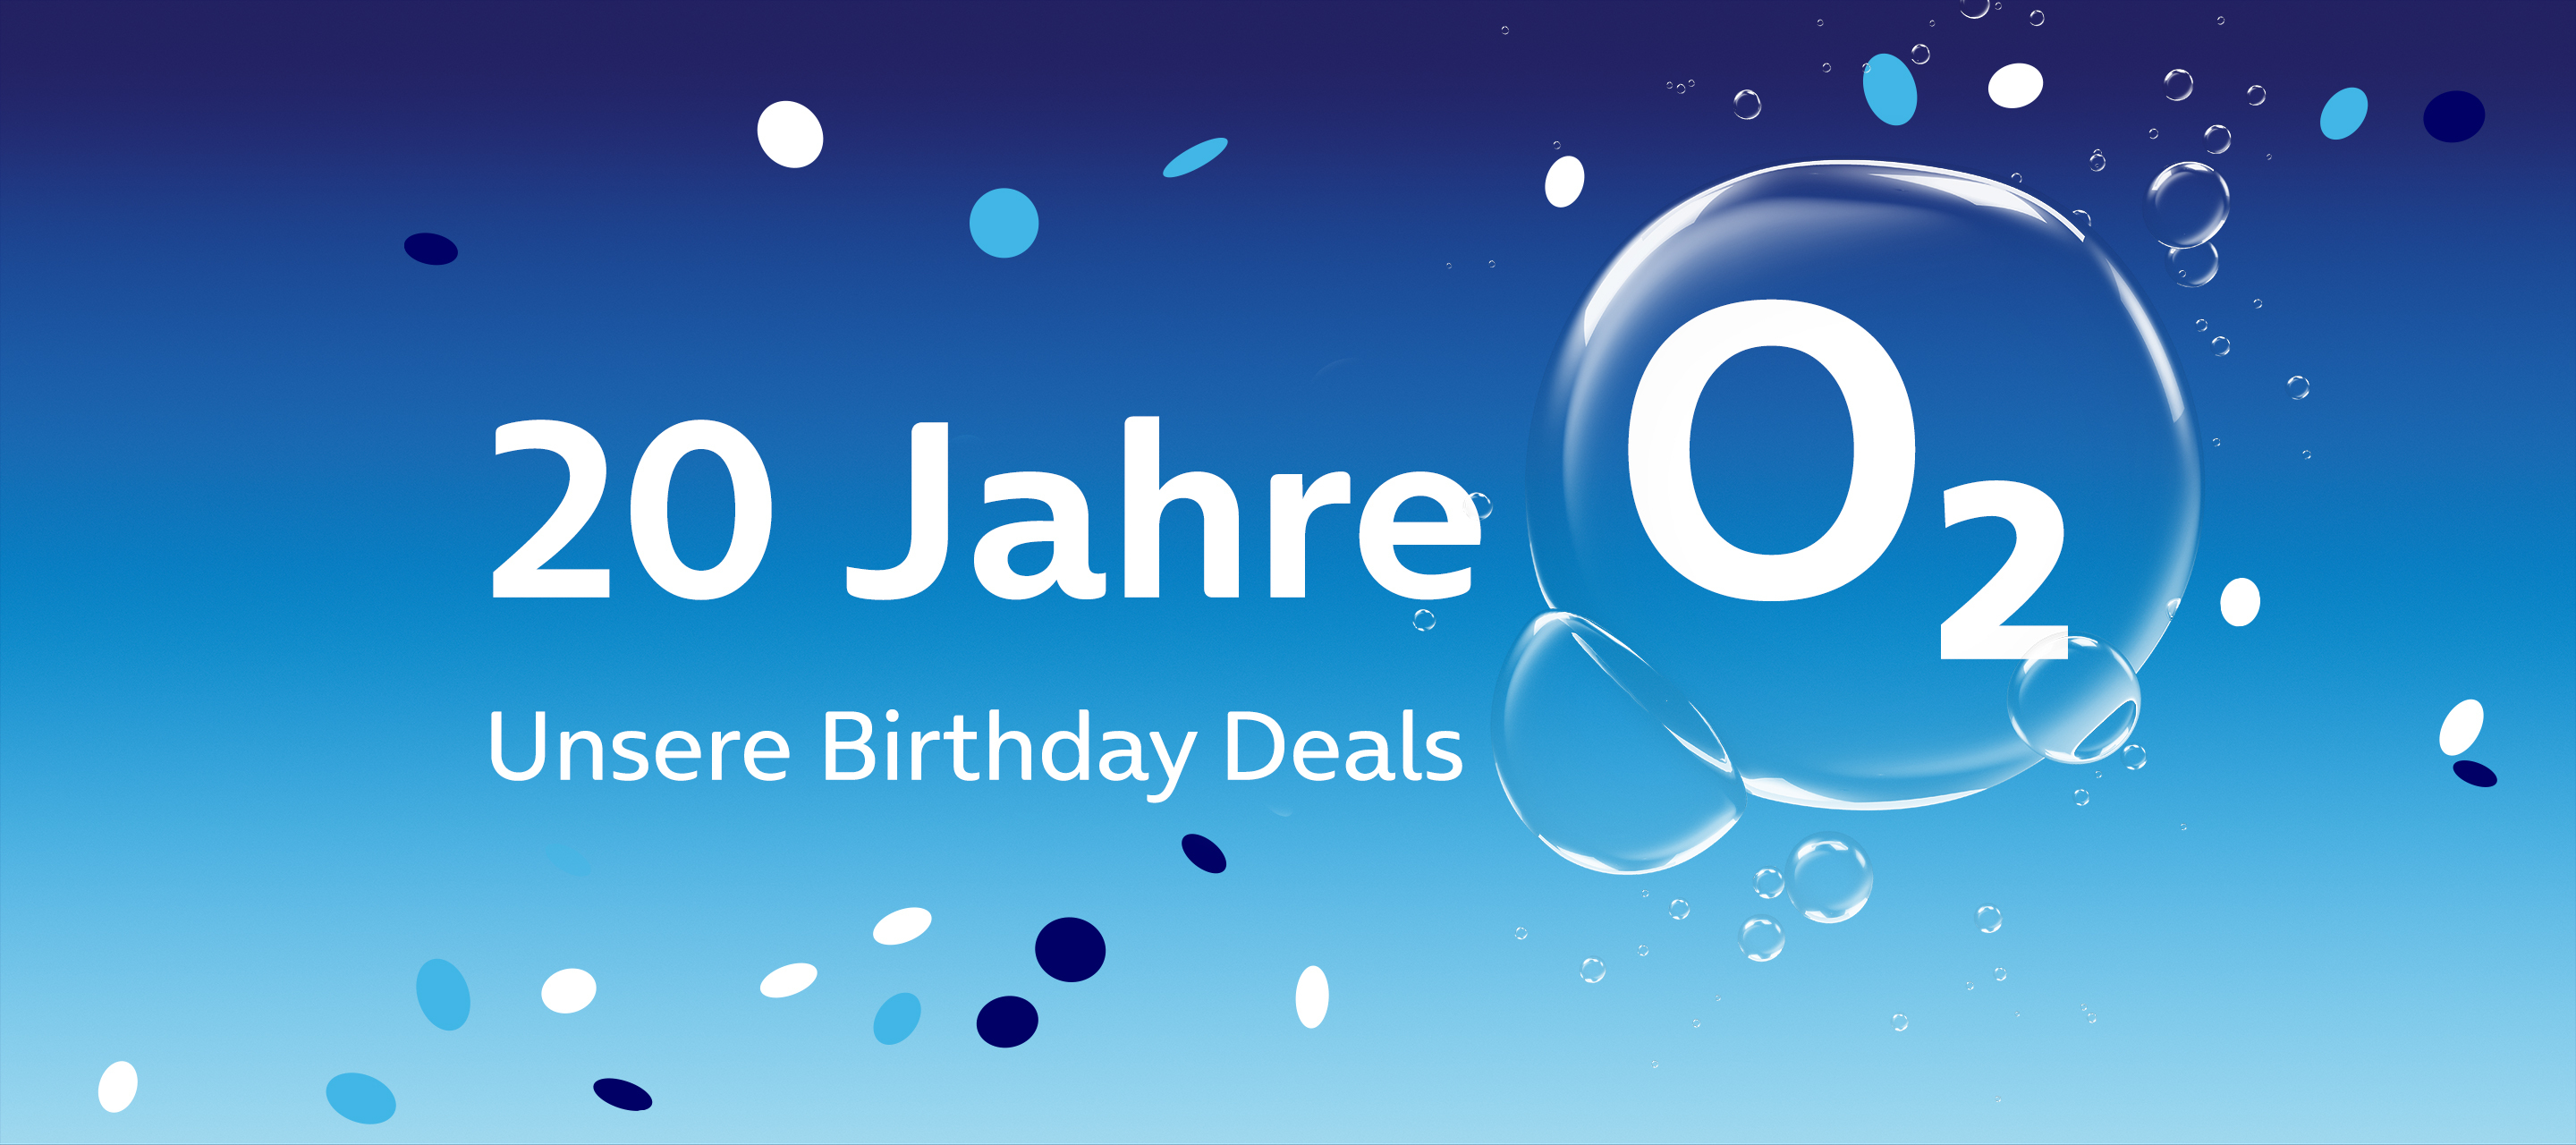 20 Jahre O₂ - unsere Birthday Deals